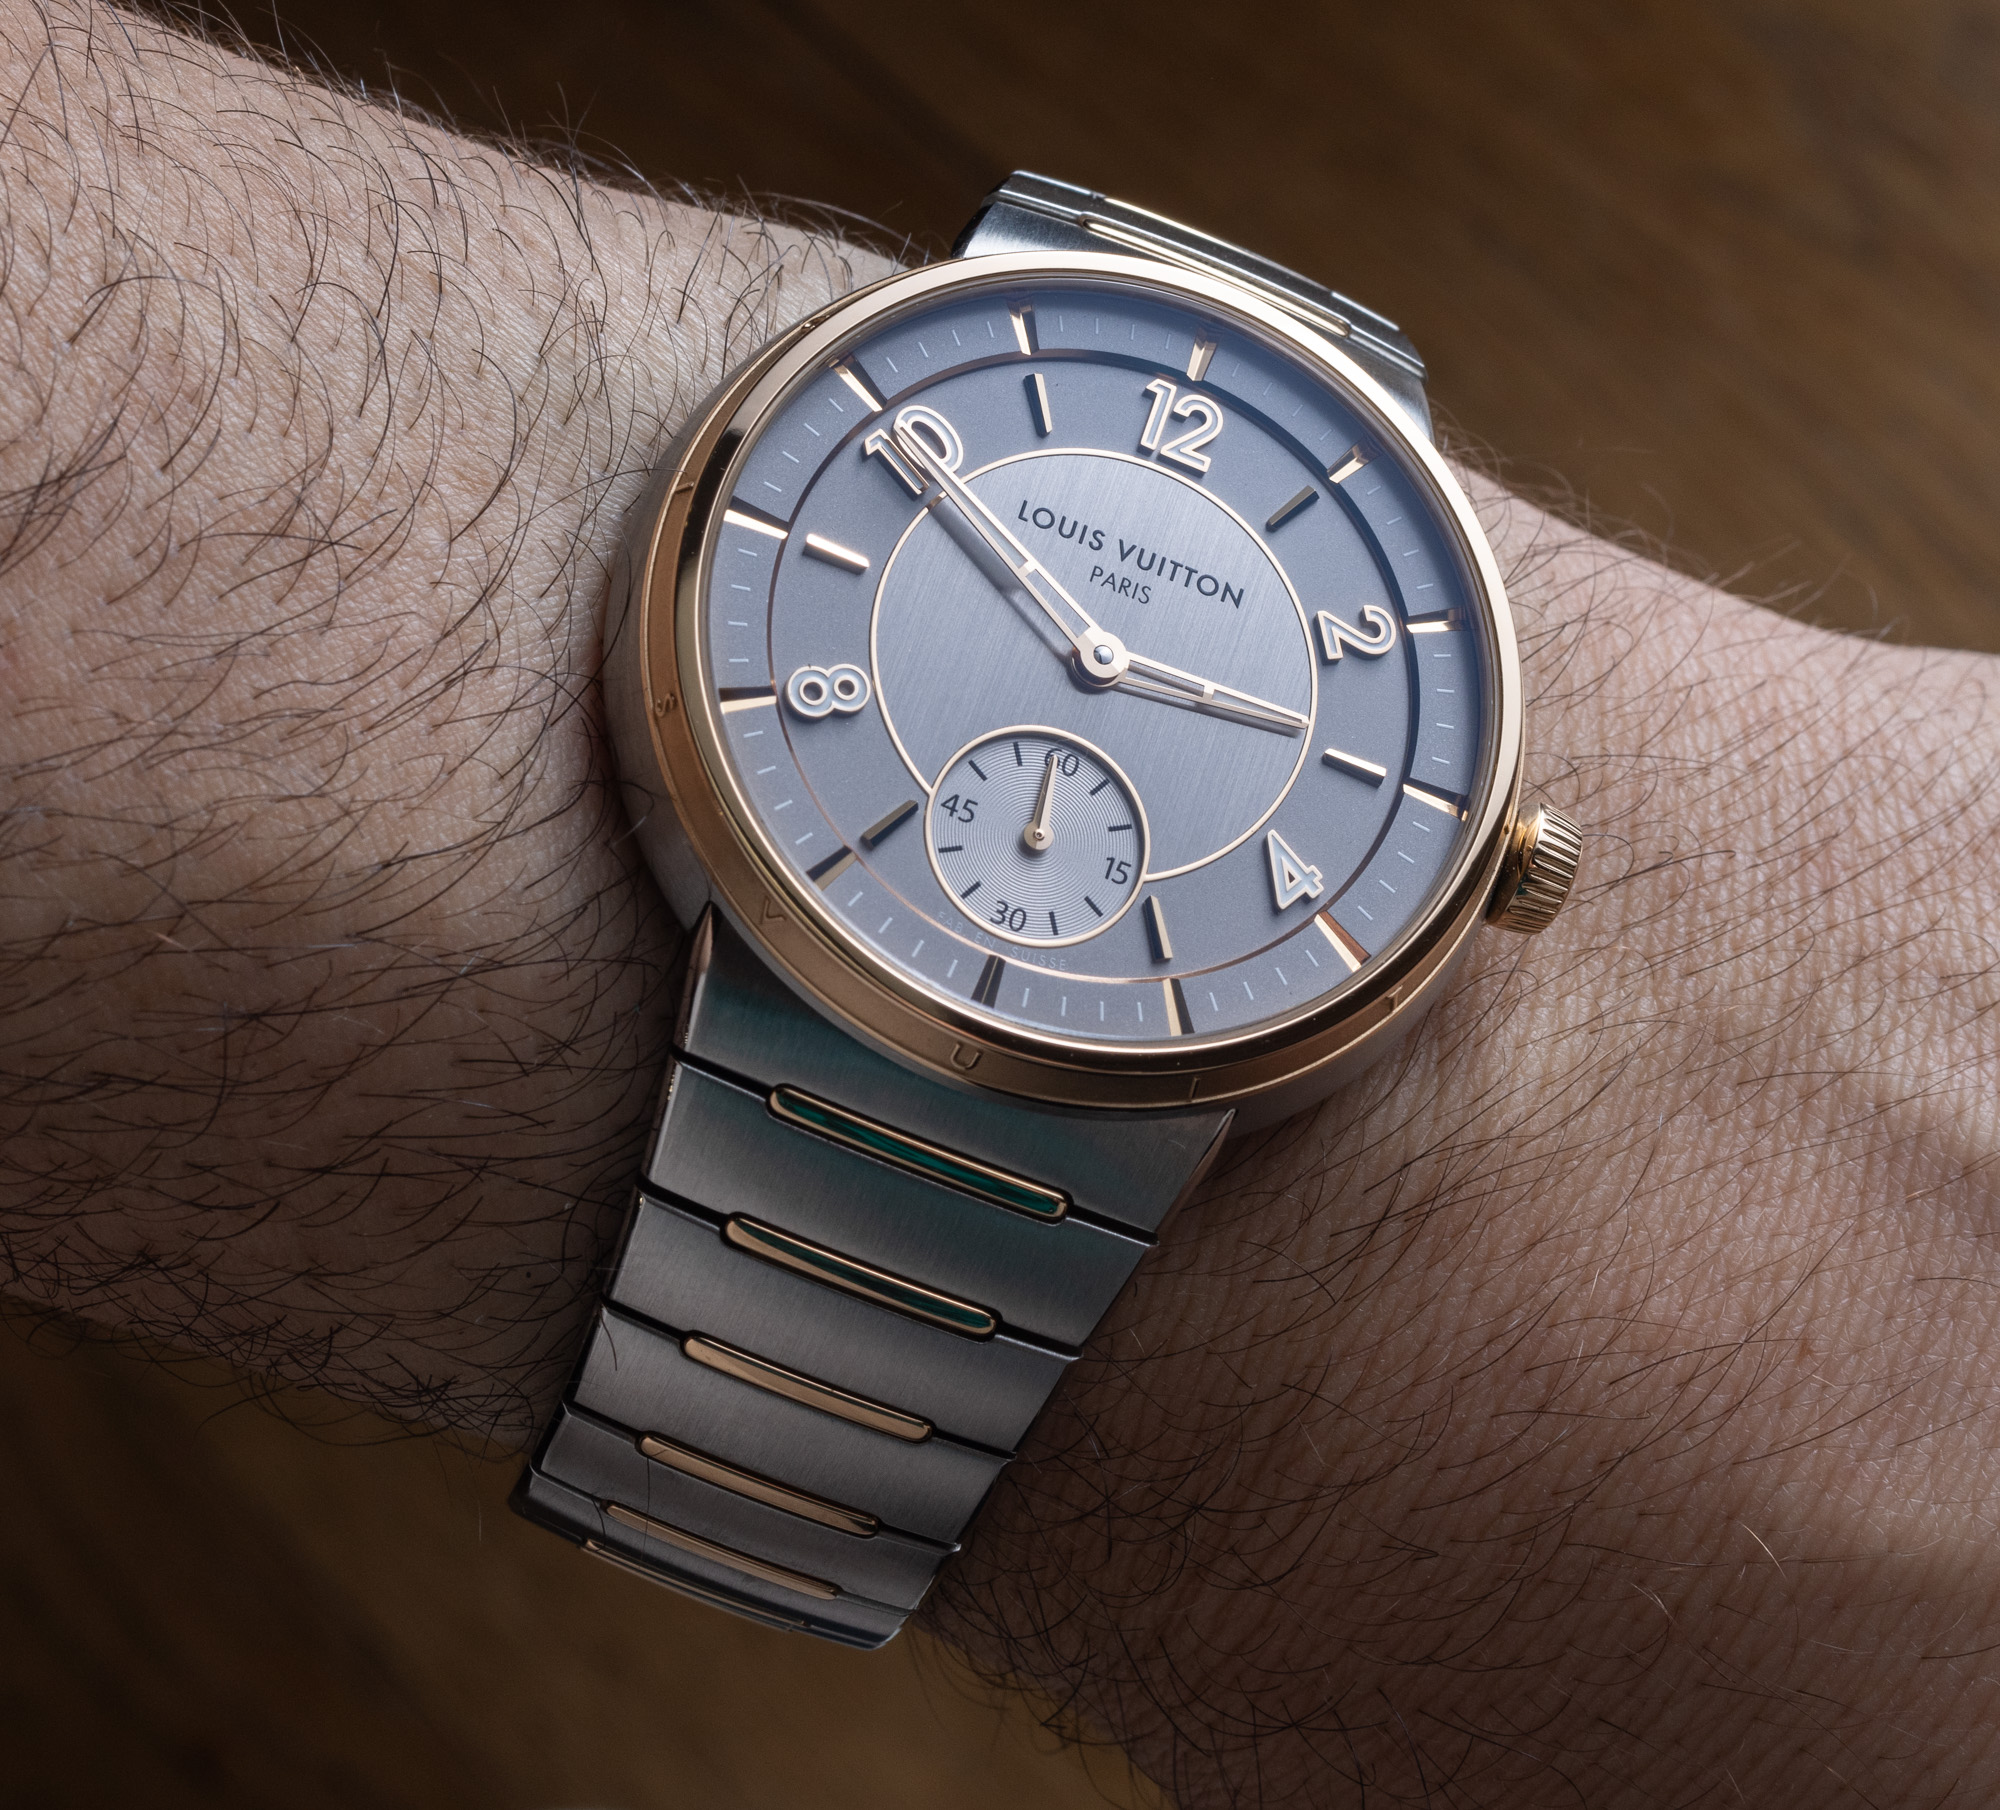 Louis Vuitton перезапускает модель Tambour в качестве высококлассных часов с интегрированным браслетом